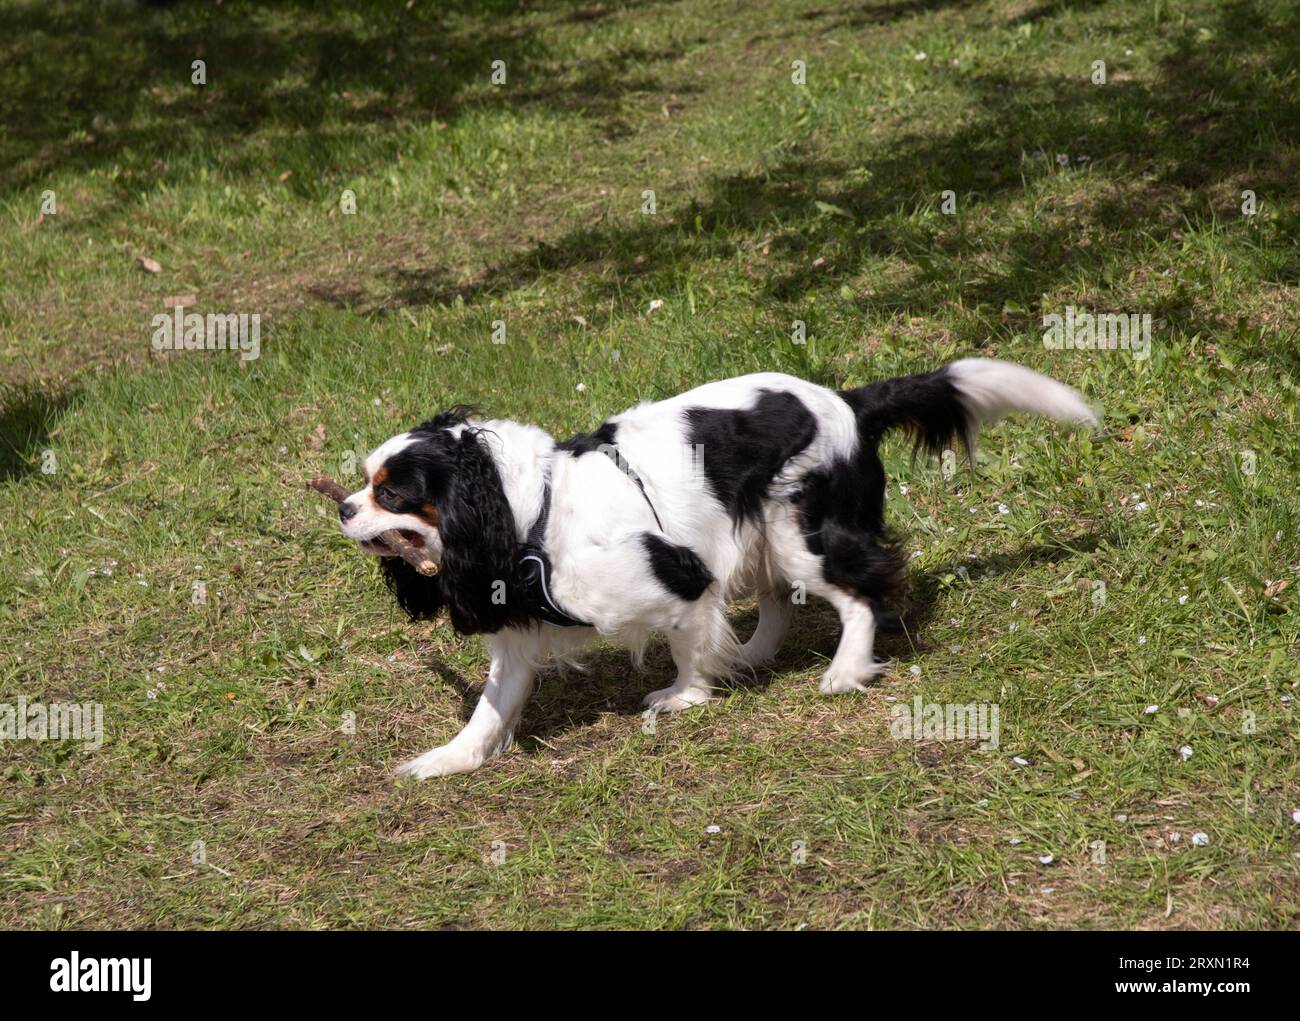 foto di un cane che porta un bastone nei denti per strada. erba verde, tempo soleggiato Foto Stock